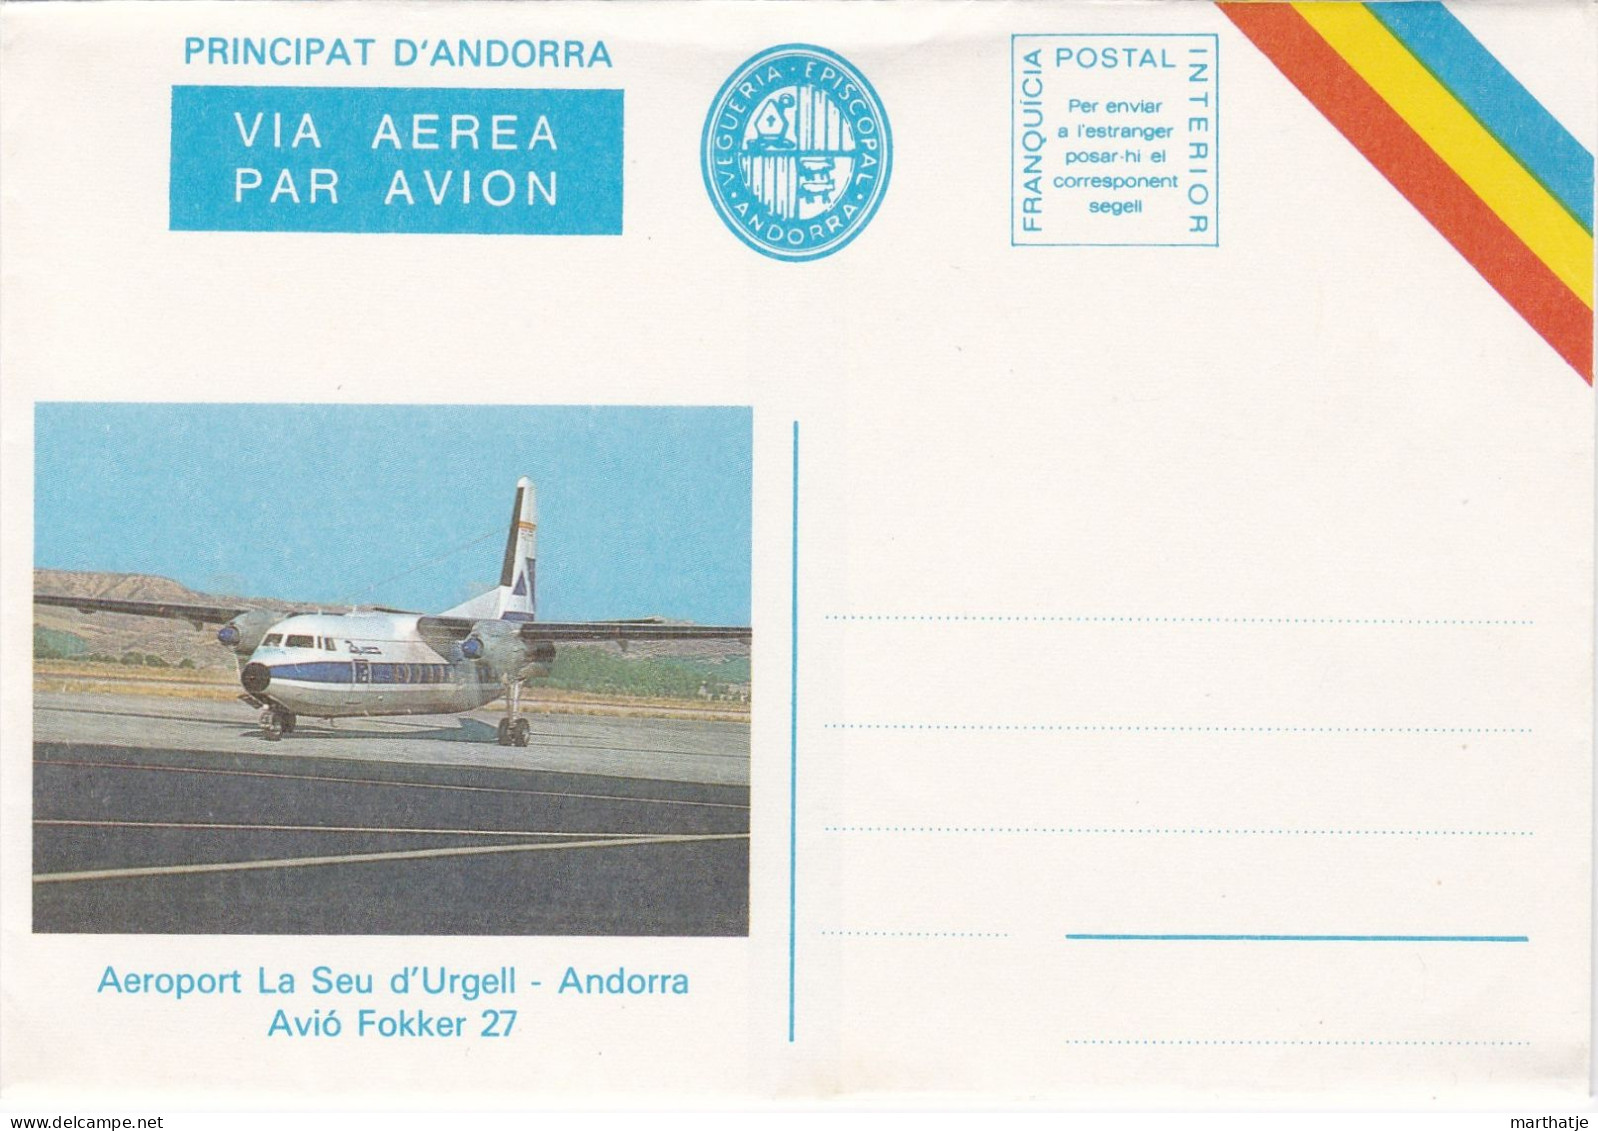 Principat D'Andorra -  Via Aerea Par Avion - Vegueria Episcopal - Aeroport La Seu D'Urgell - Avio Fokker 27 - Andorra - Viguerie Episcopale